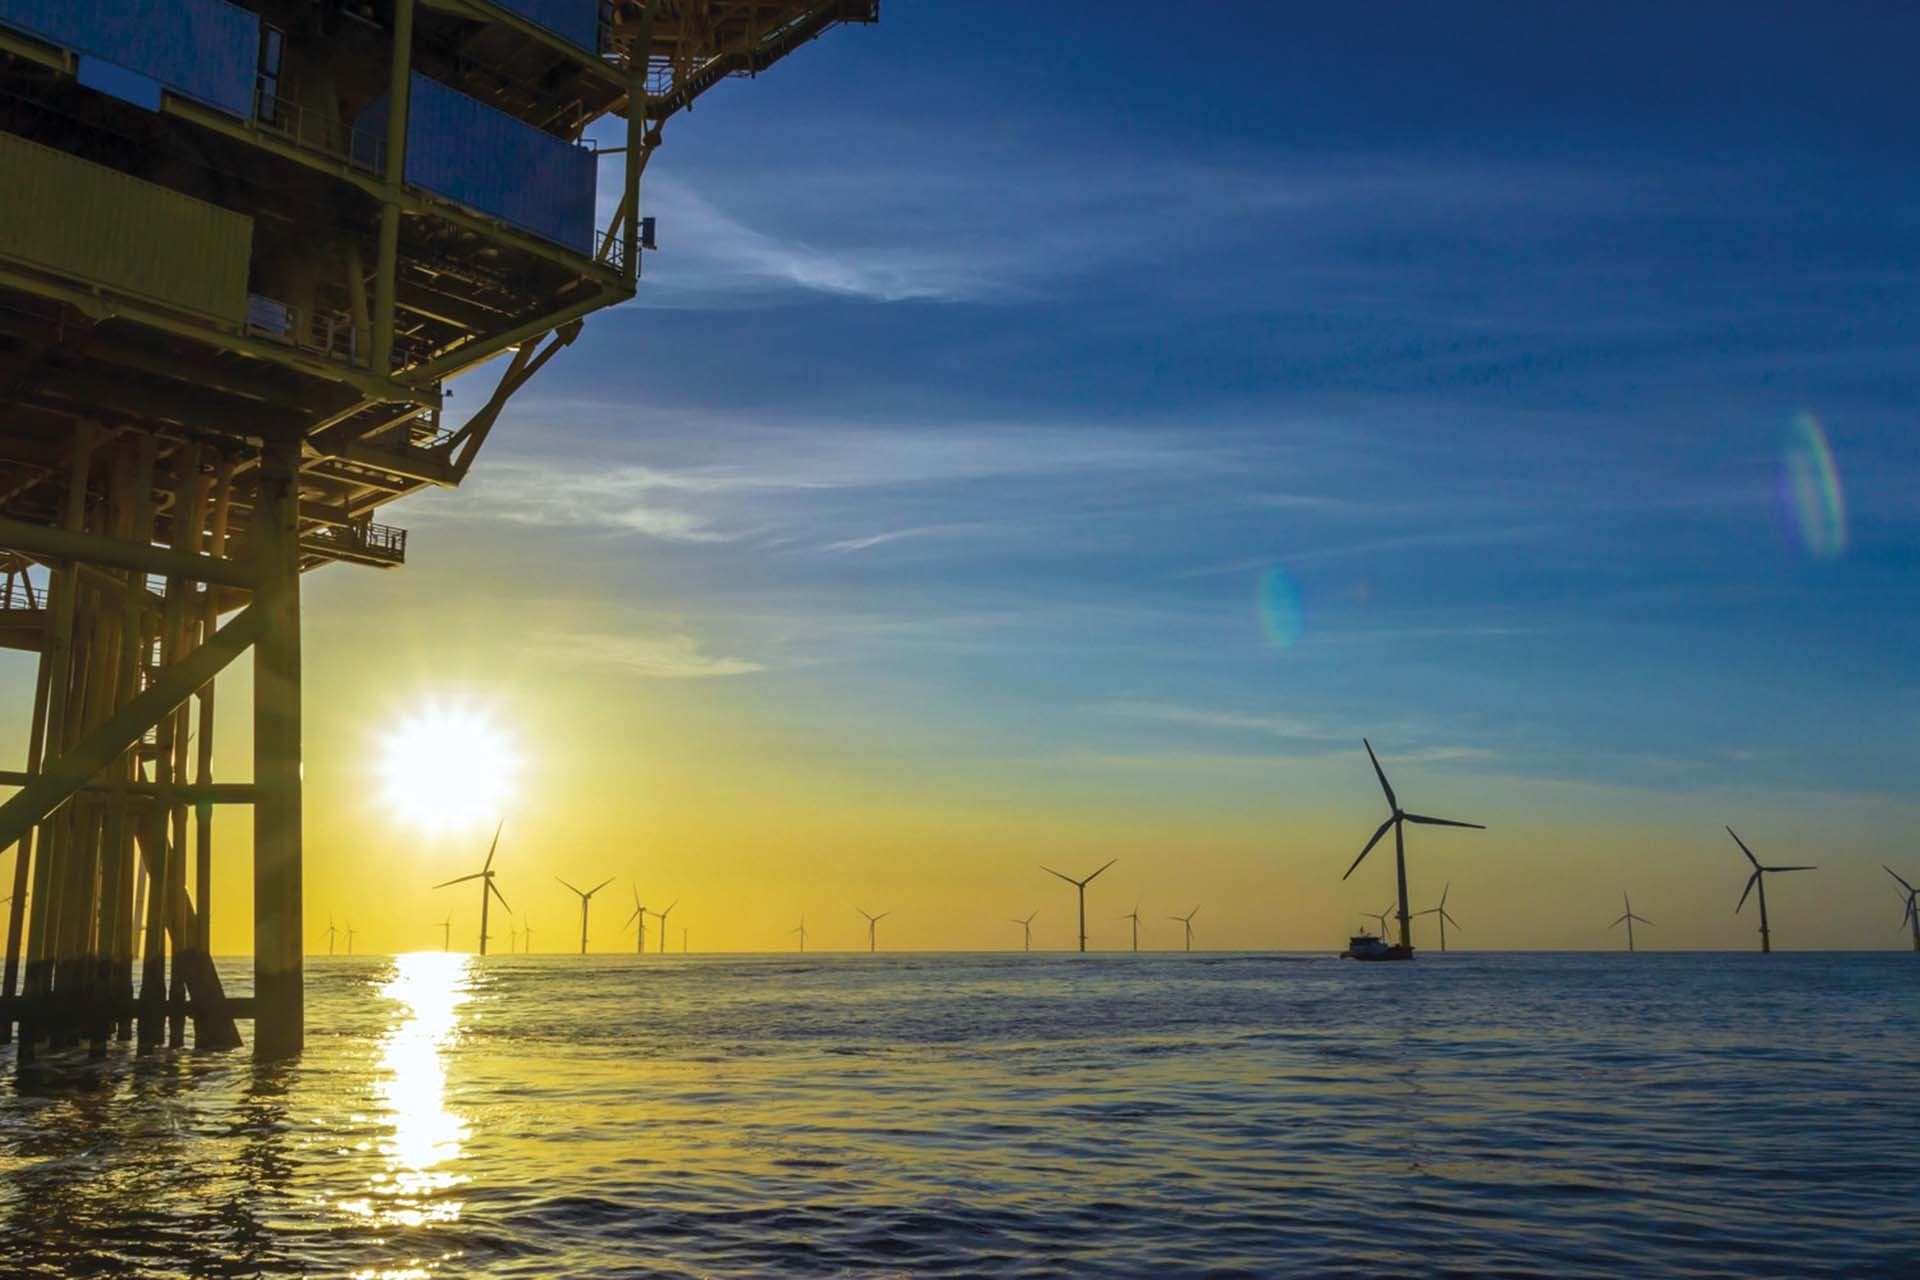 PetroVietnam xây dựng Chiến lược sản xuất khí hydro từ điện gió ngoài khơi nhằm góp phần giảm lượng khí thải nhà kính và kiến tạo một tương lai xanh hơn. (Nguồn: PetroVietnam)